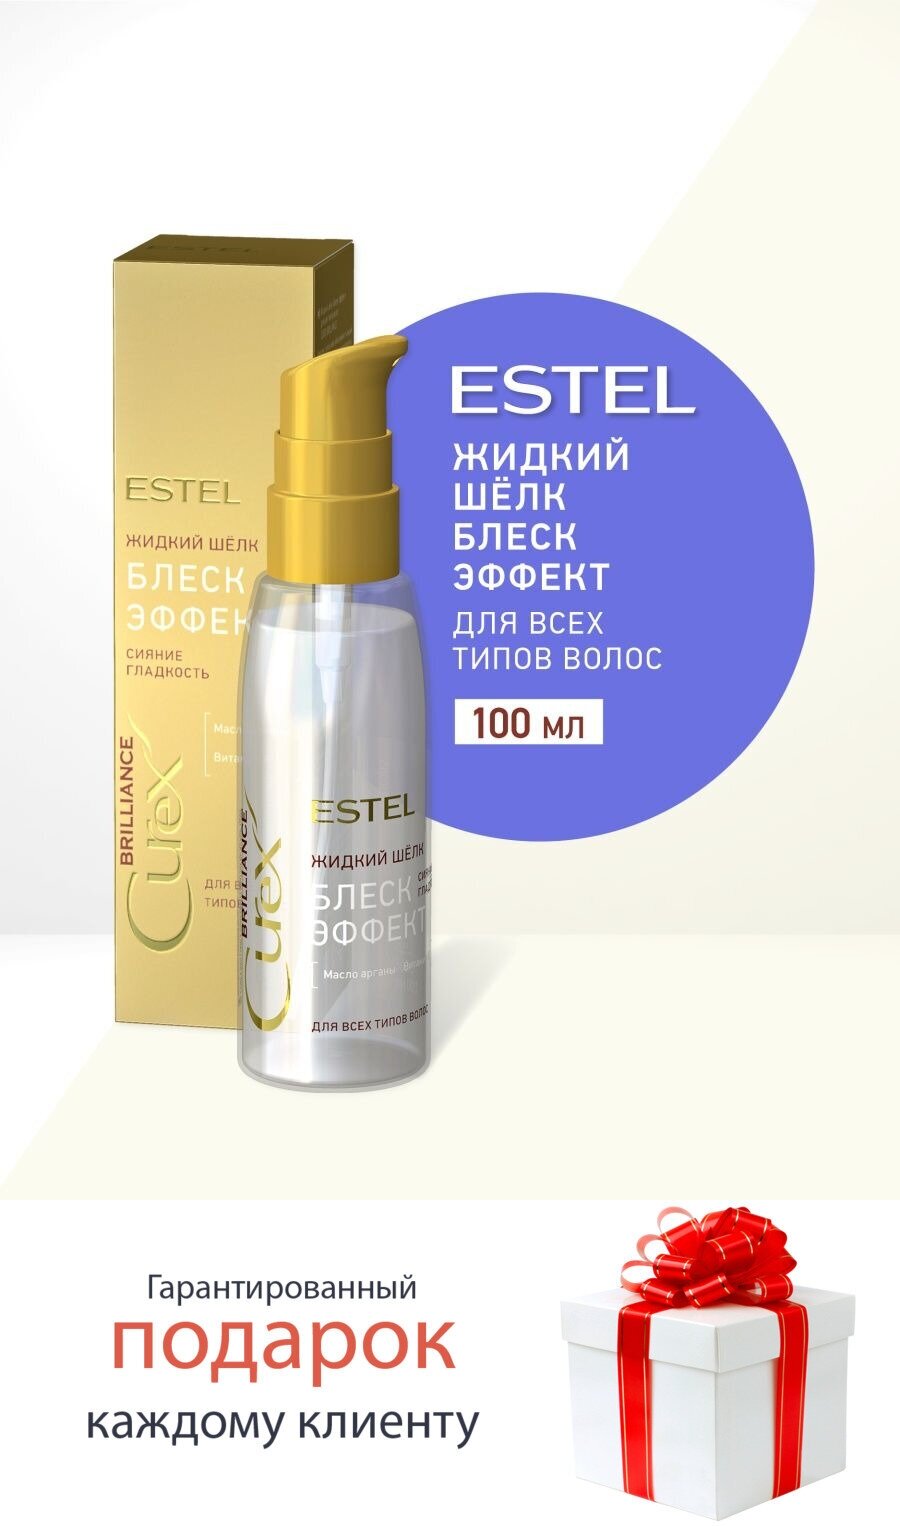 Estel Жидкий шёлк "Блеск-эффект" для всех типов волос 100 мл (Estel, ) - фото №10